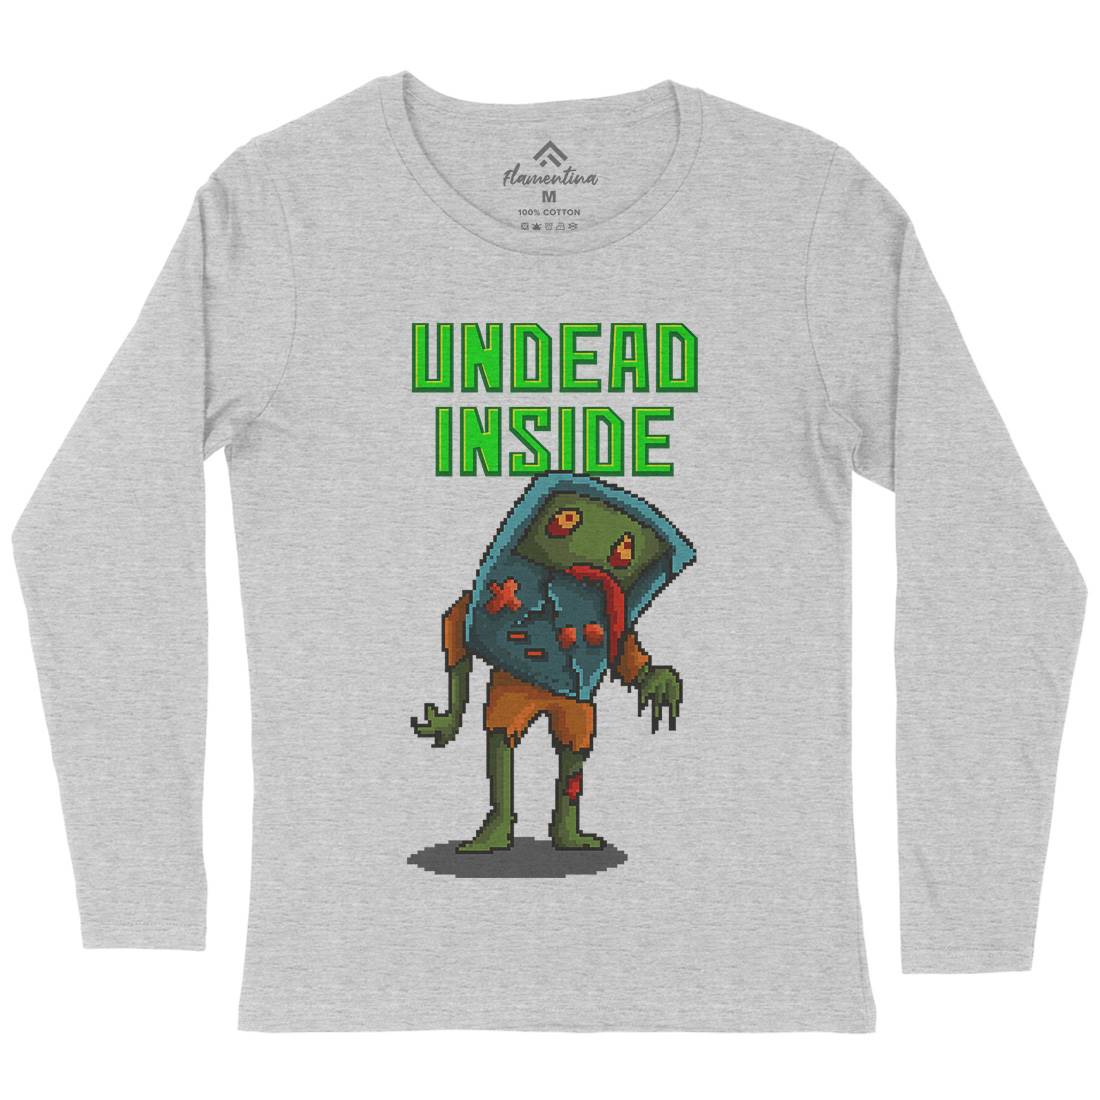 Undead Inside Womens Long Sleeve T-Shirt Geek B973